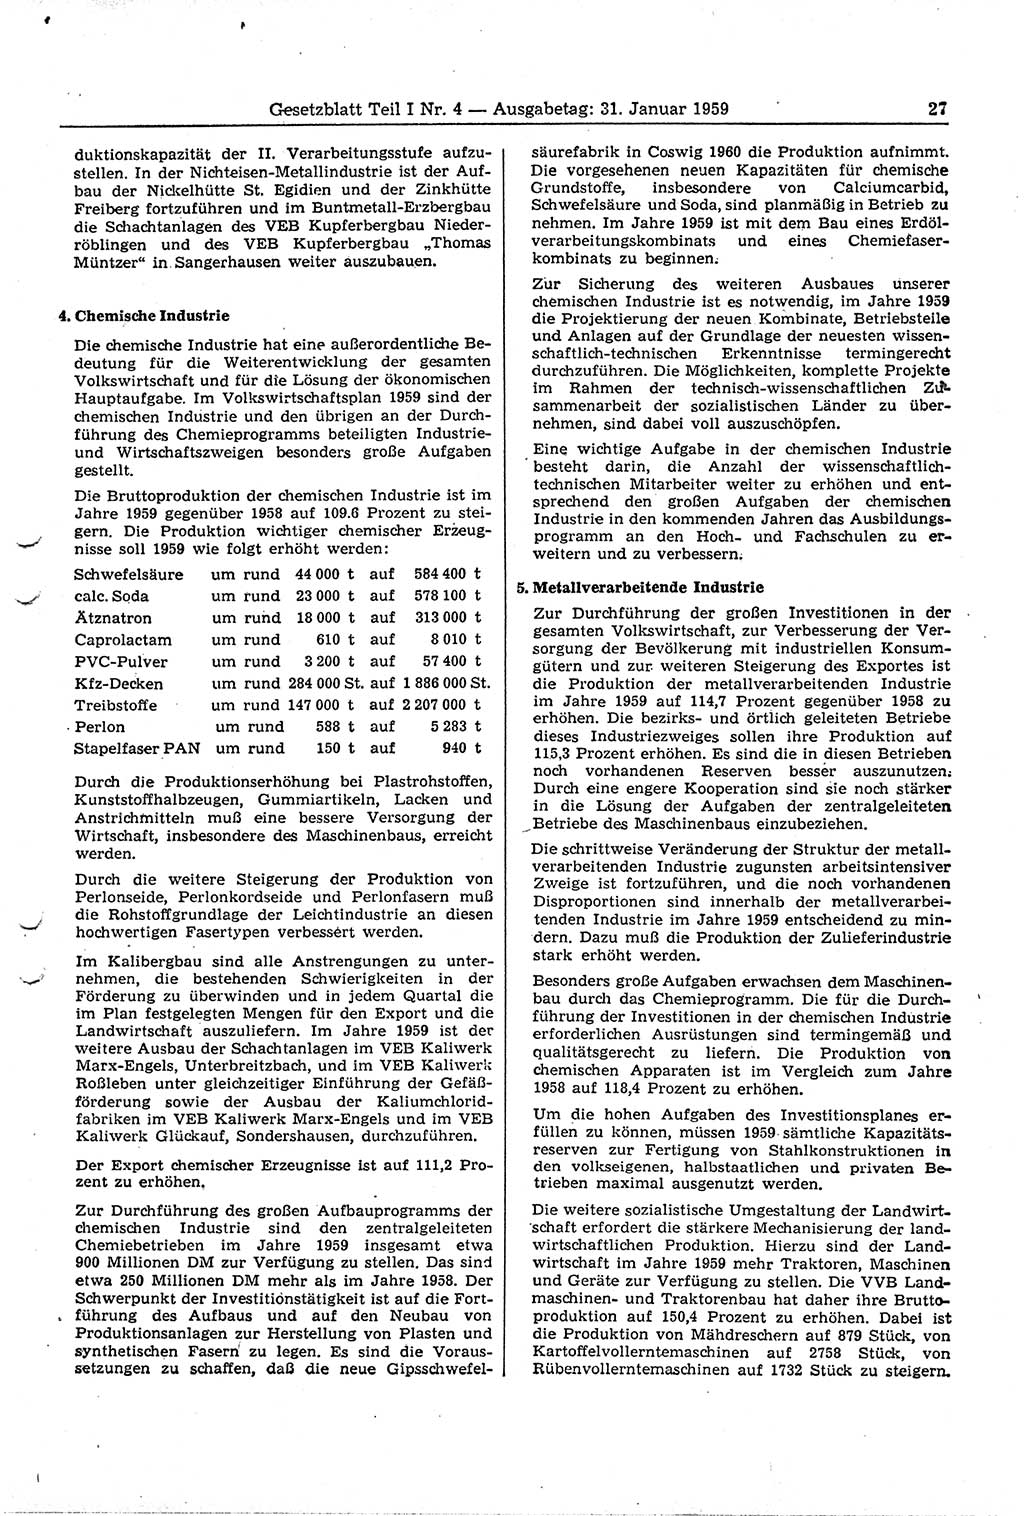 Gesetzblatt (GBl.) der Deutschen Demokratischen Republik (DDR) Teil Ⅰ 1959, Seite 27 (GBl. DDR Ⅰ 1959, S. 27)